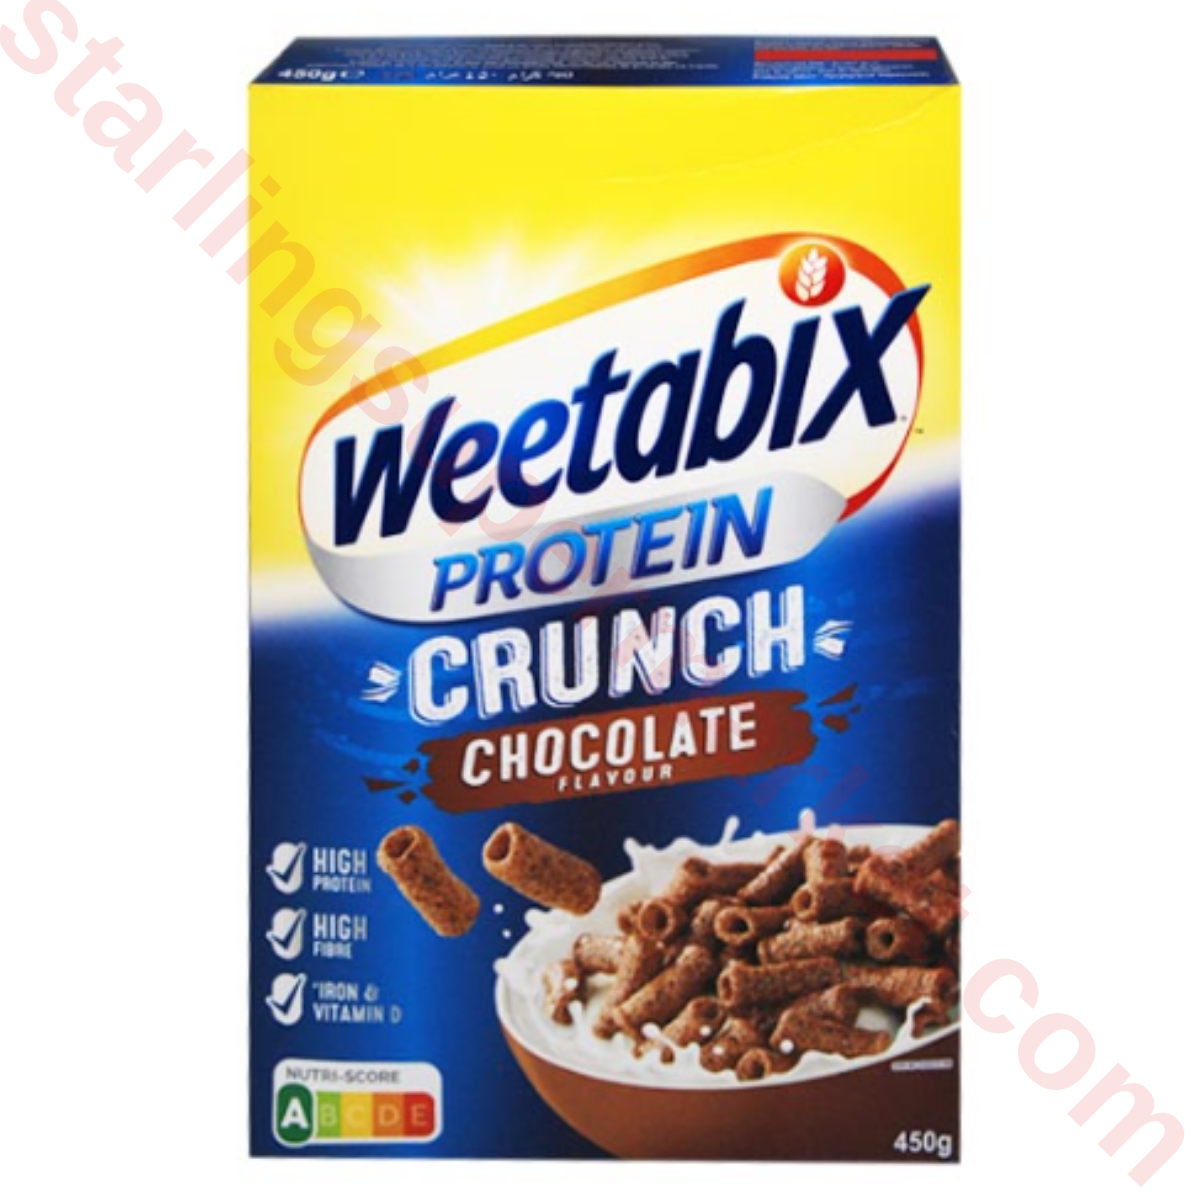 WEETABIX PROTEIN CRUNCH CHOCOLATE 450 G